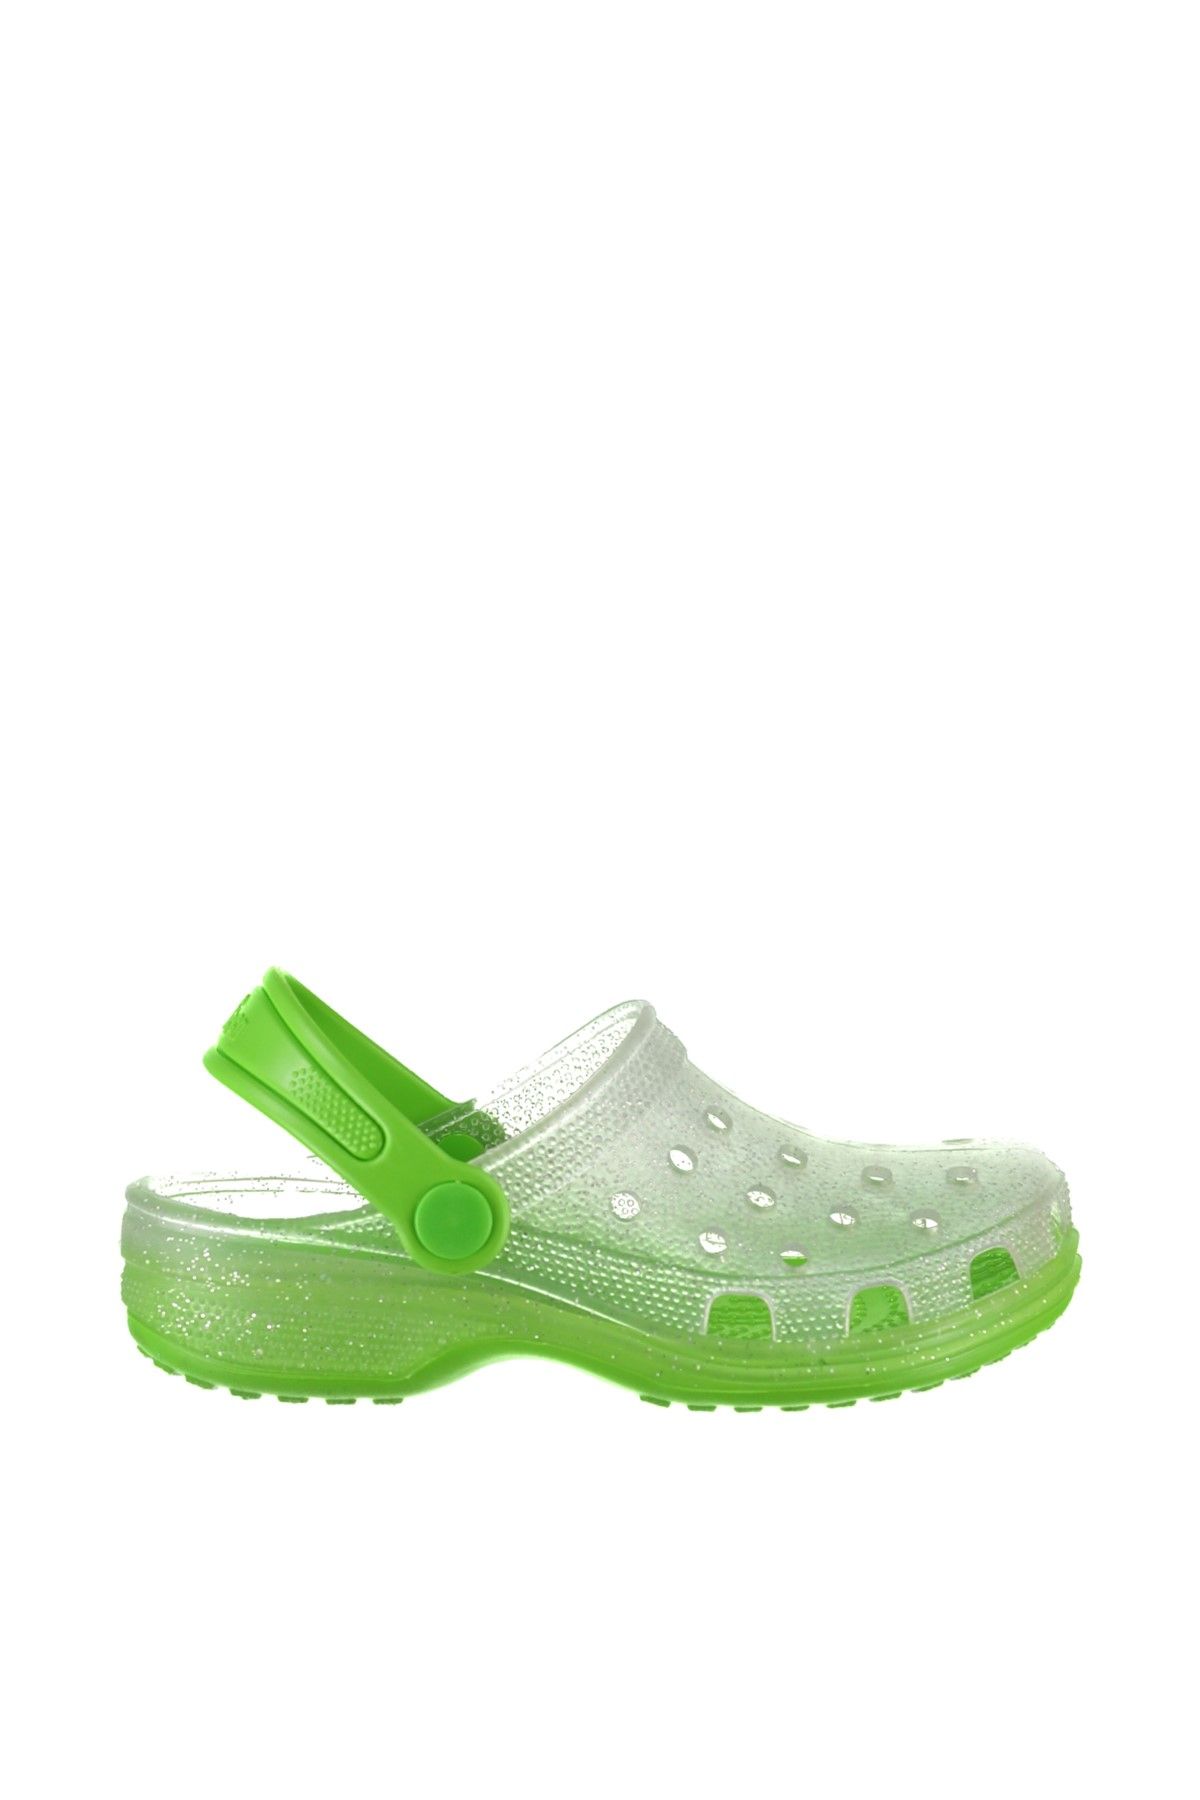 Chicco Yeşil Unisex Çocuk Sandalet